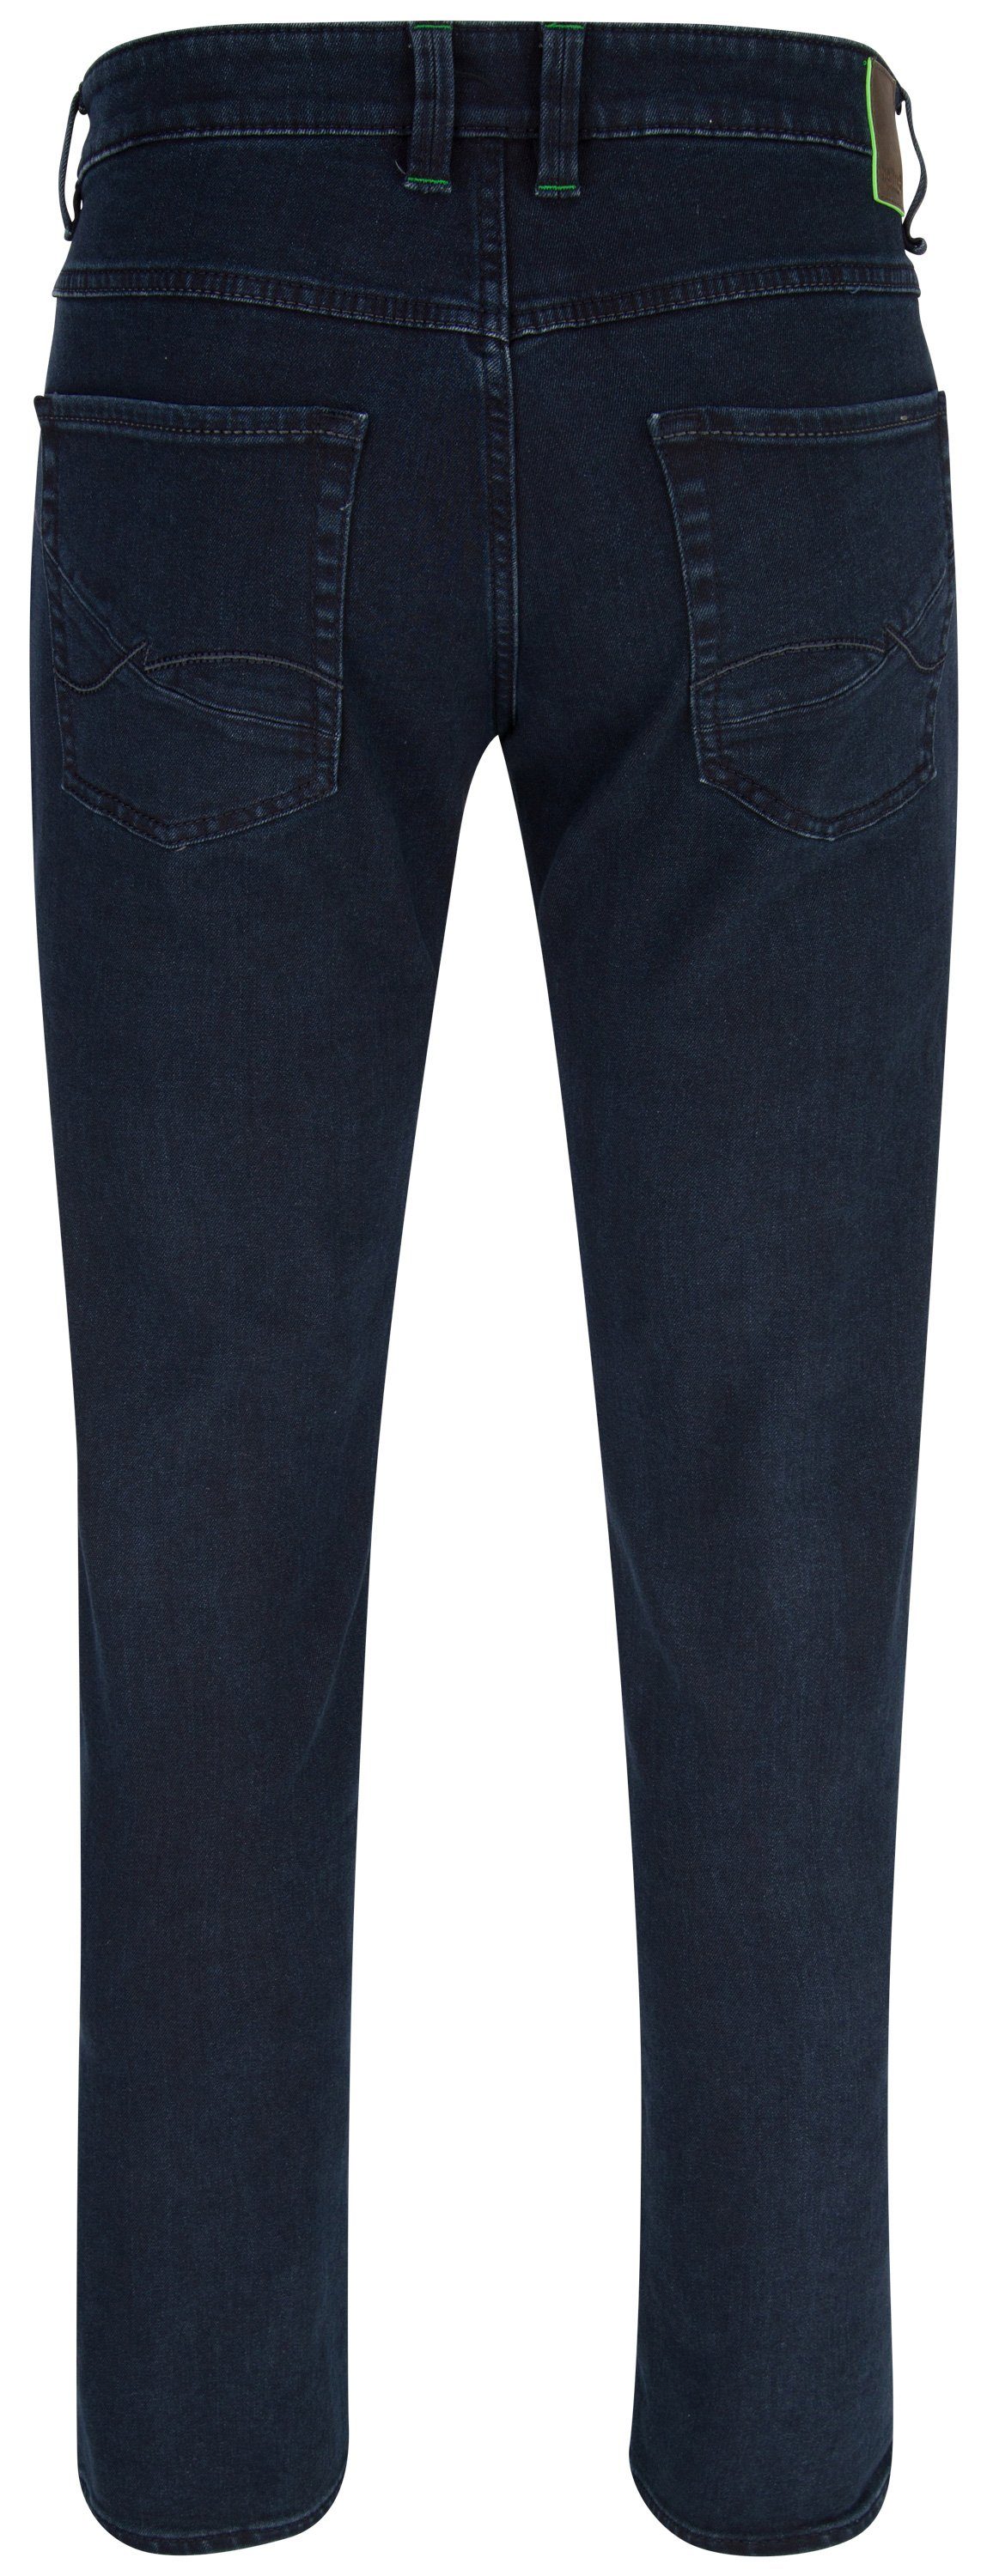 Hattric 5-Pocket-Jeans HATTRIC HARRIS dark 9318.46 688125 indigo